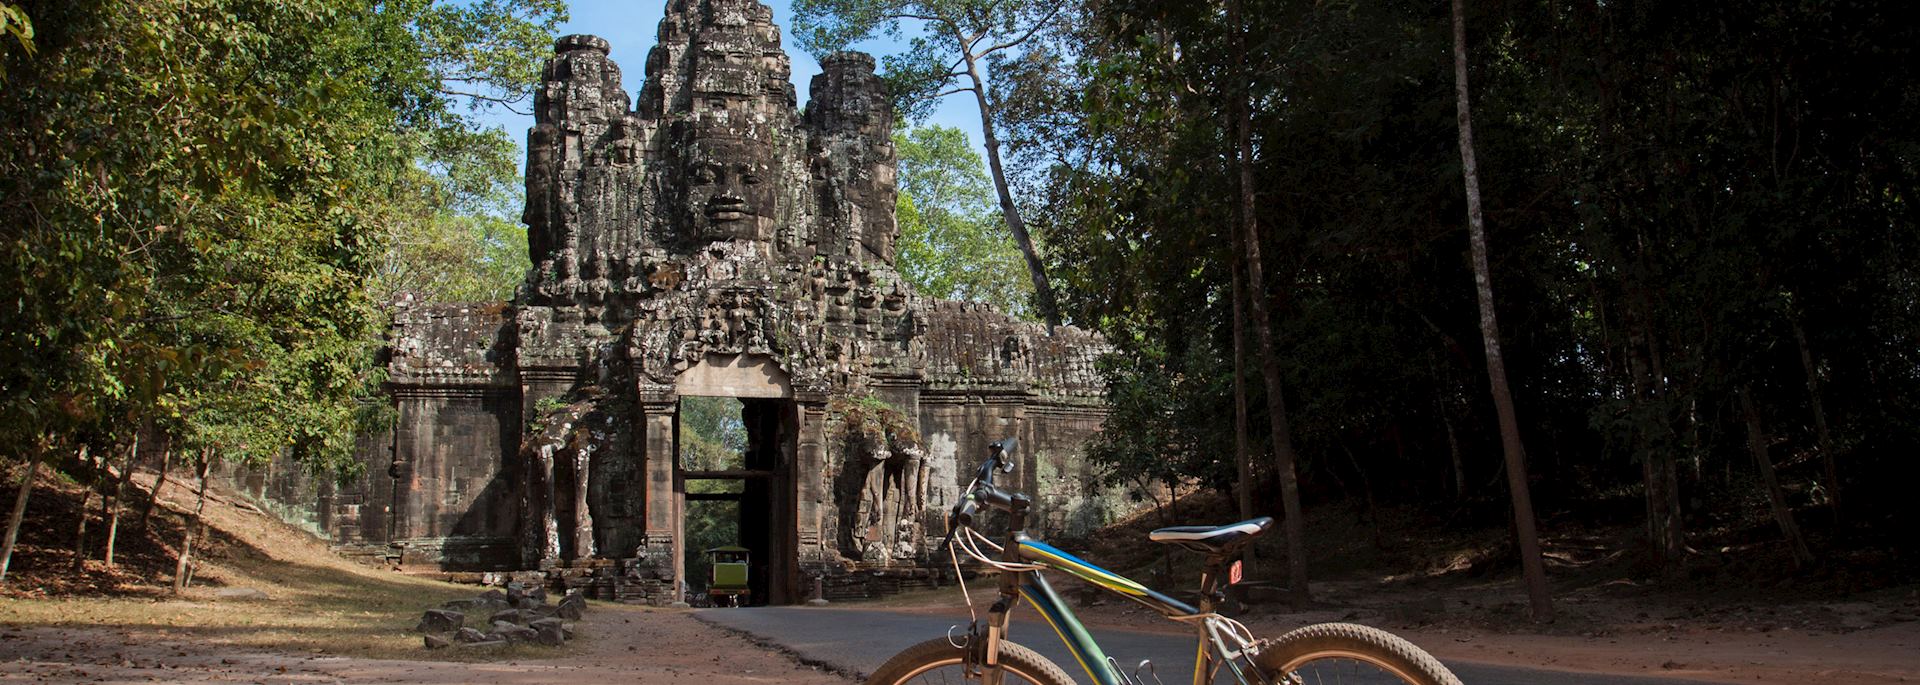 Bike parked at Angkor Thom